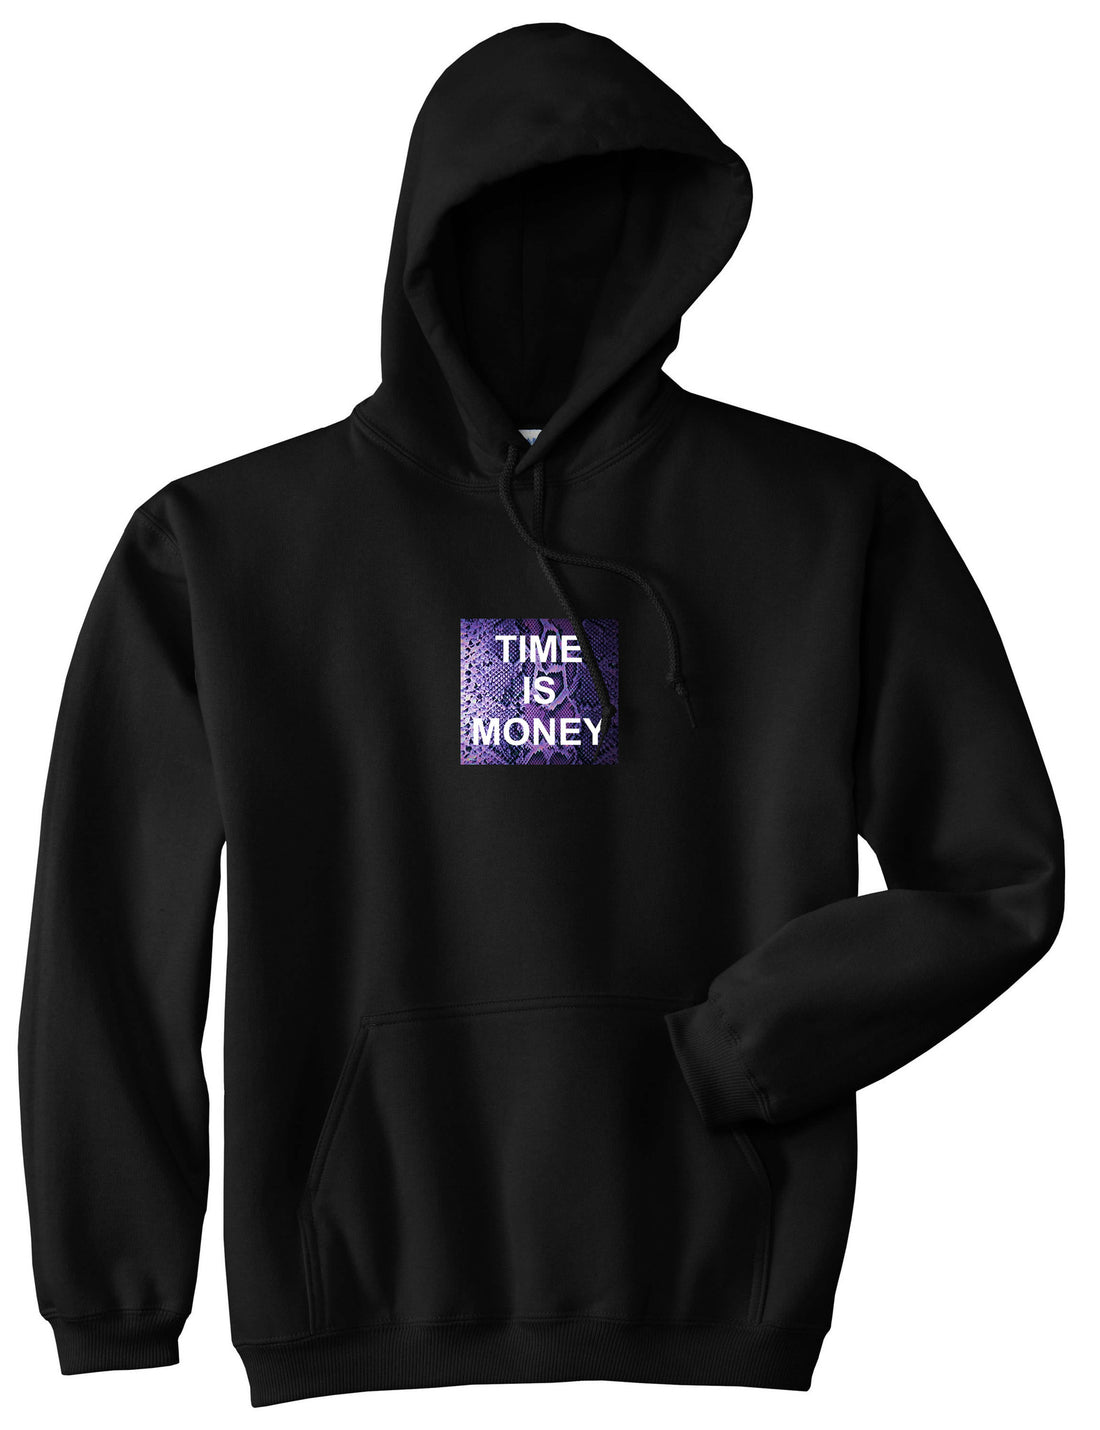 Time Is Money Snakesin Print Boys Kids Pullover Hoodie Hoody in Black By Kings Of NY